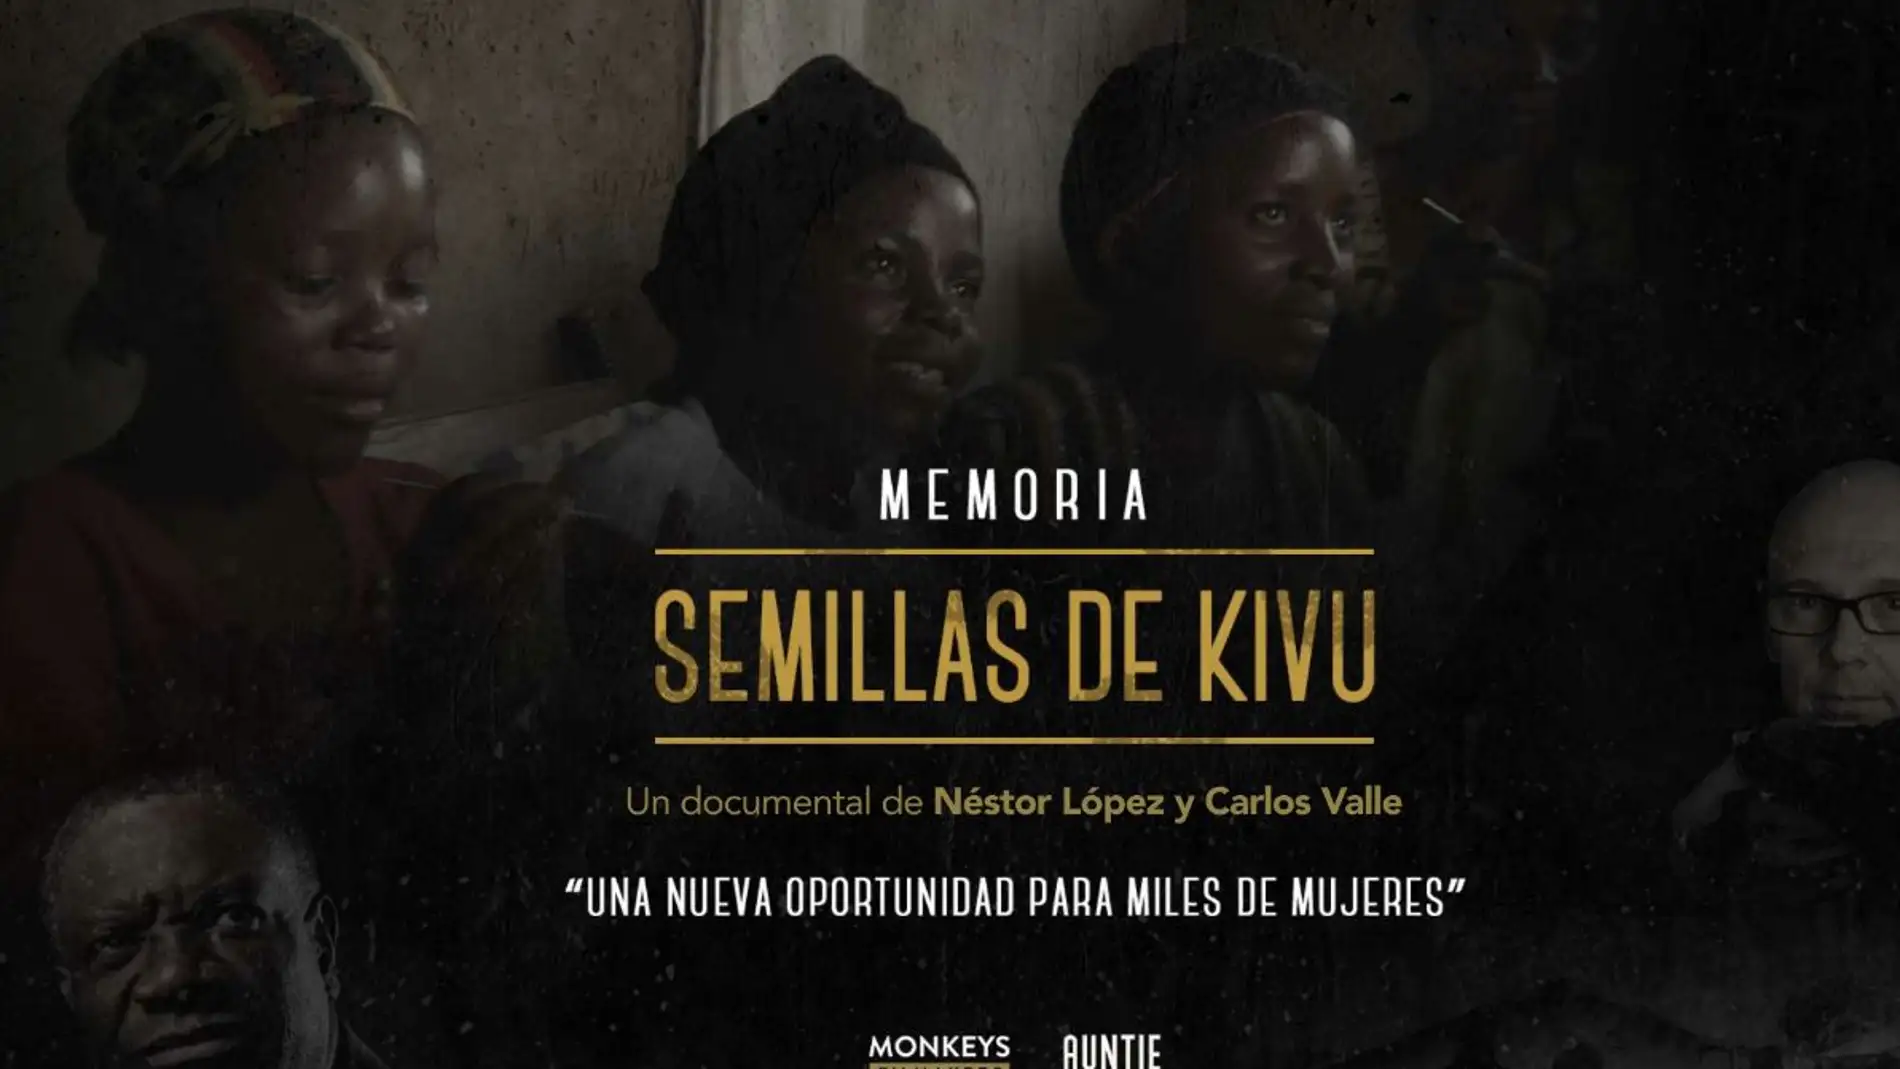 “Semillas de Kivu”, proyecto ganador del concurso de cortos organizado por Amnistía Internacional-Abycine 2021